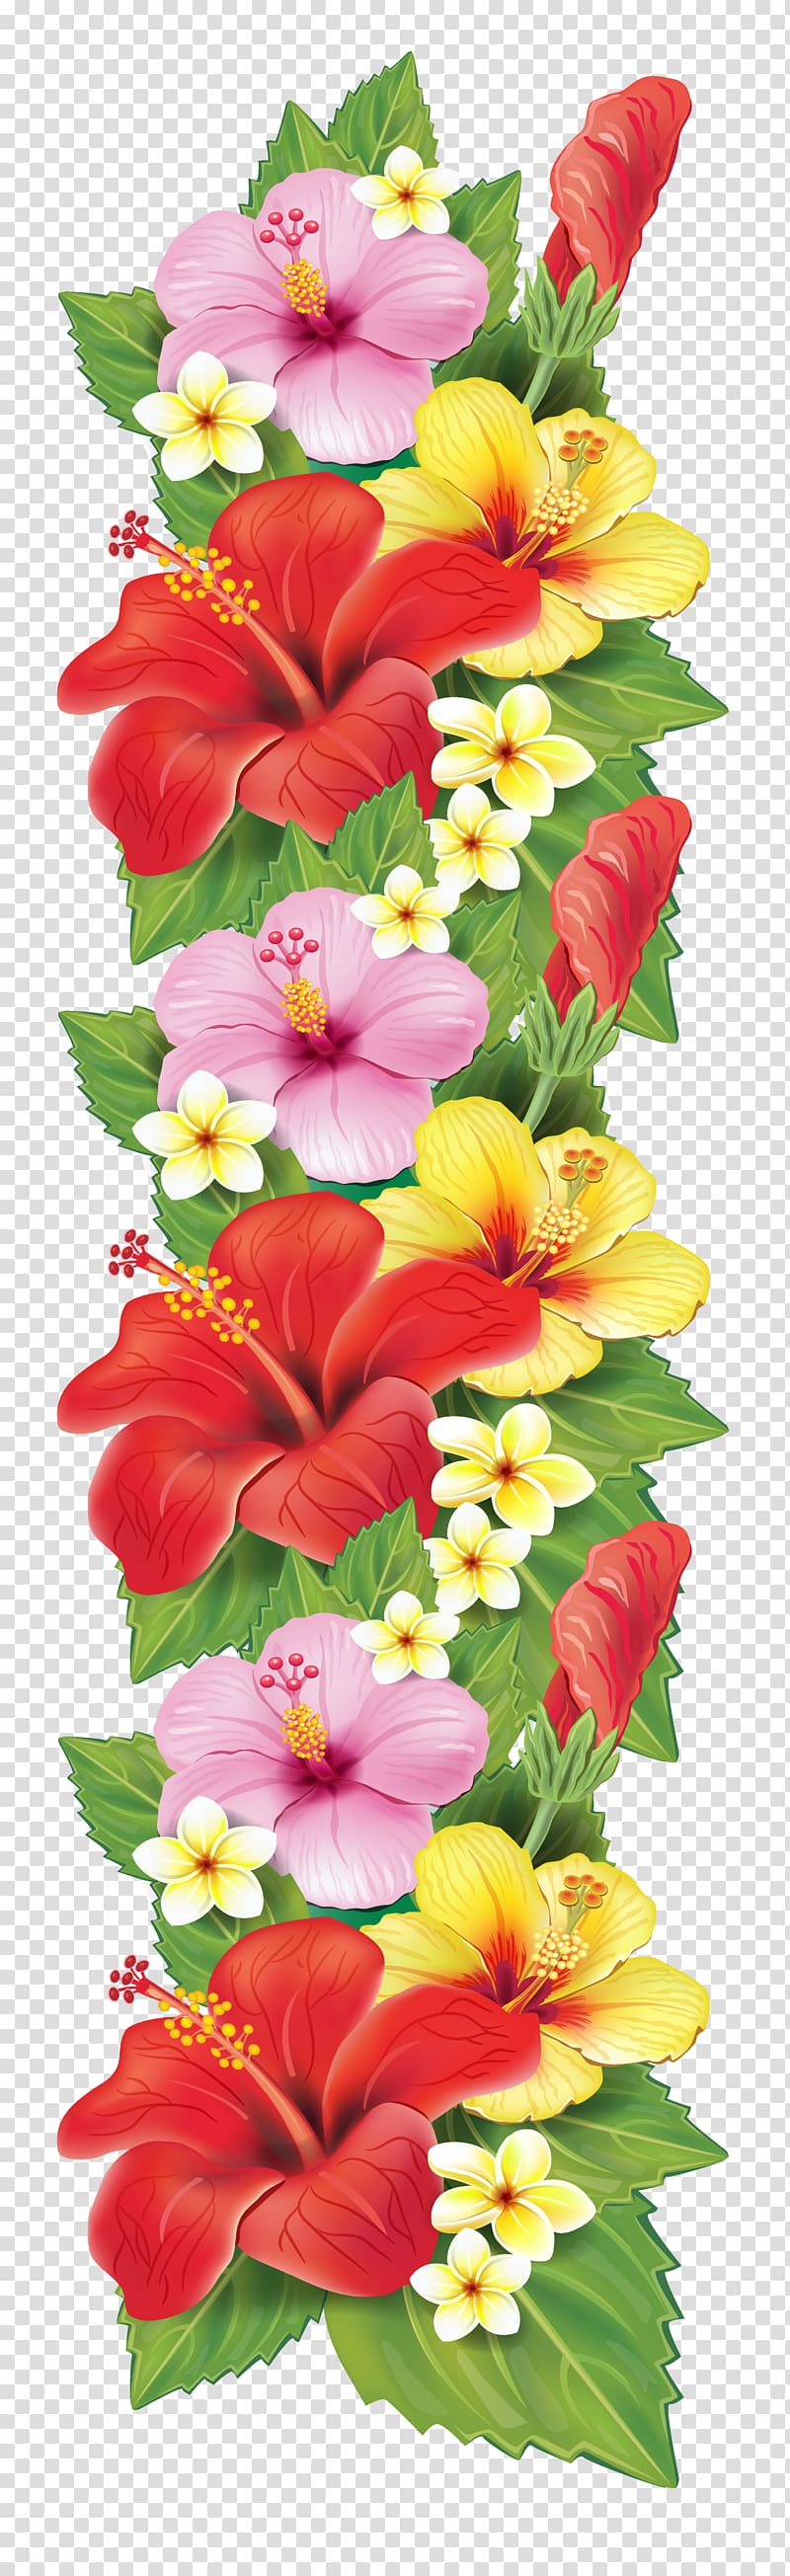 Flower bouquet Decorative arts , Flowers transparent background PNG clipart